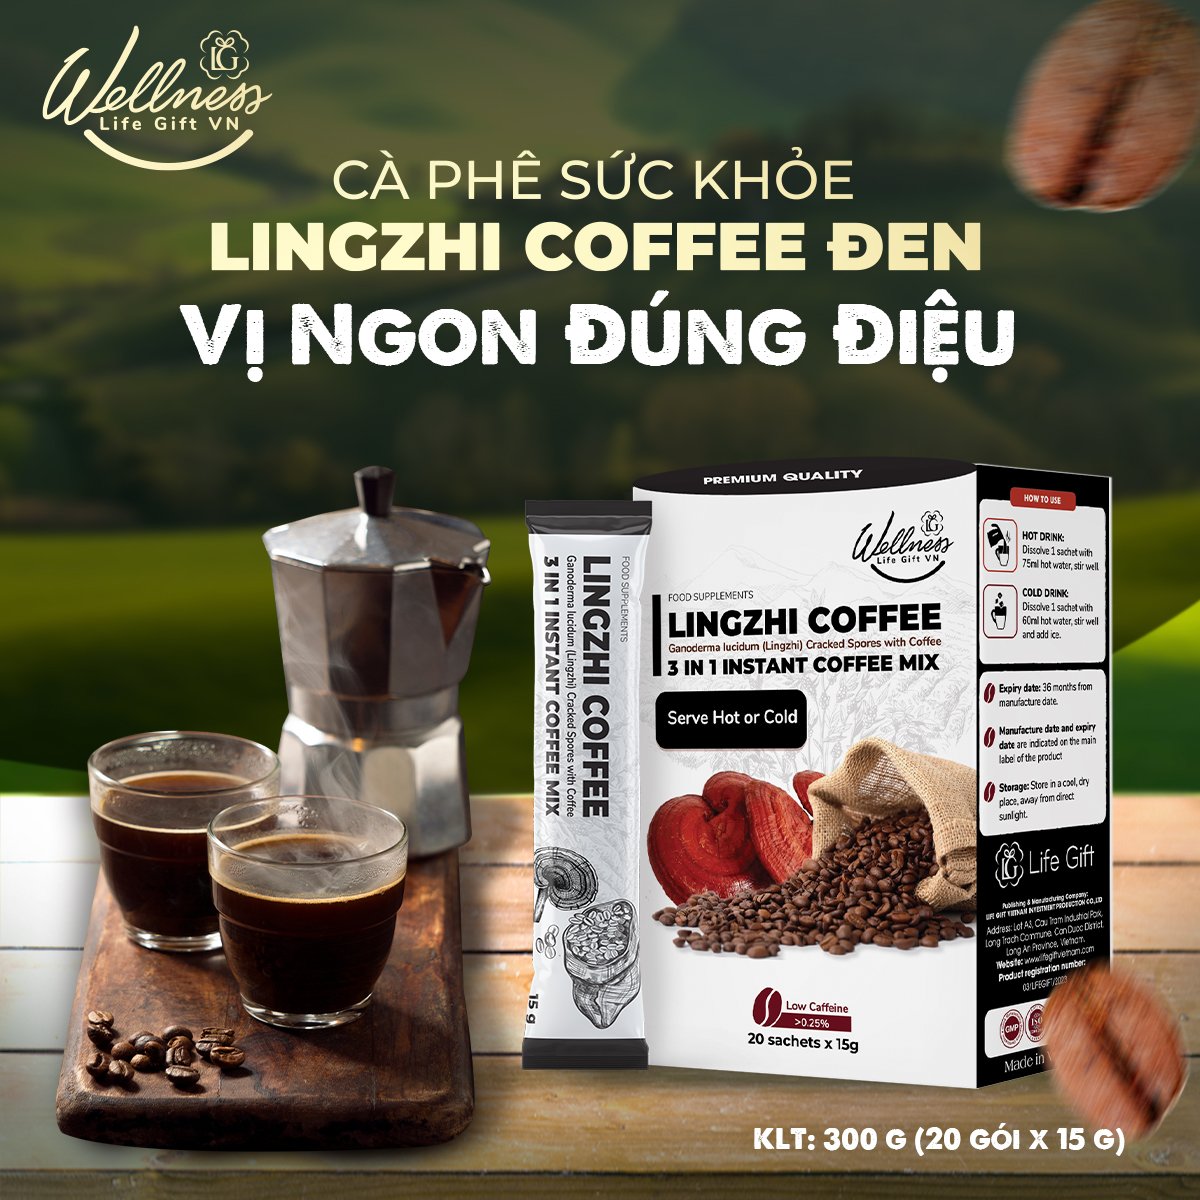 Cà phê sức khỏe Lingzhi đen 20 gói x15g Việt Nam 3 trong 1